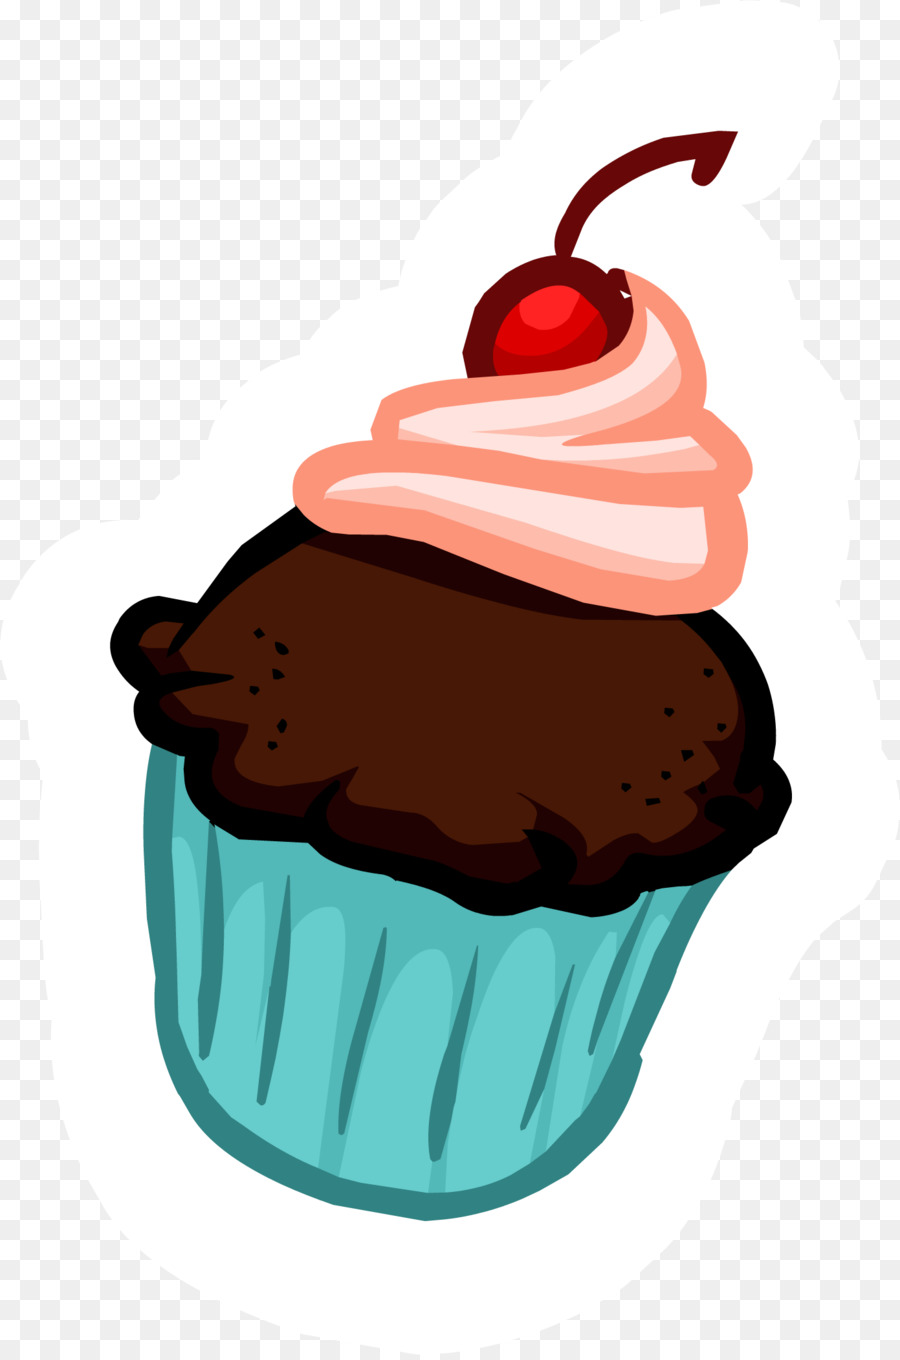 Các Bánh Cupcake nhung Đỏ bánh Kẹp nghệ thuật - chén bánh